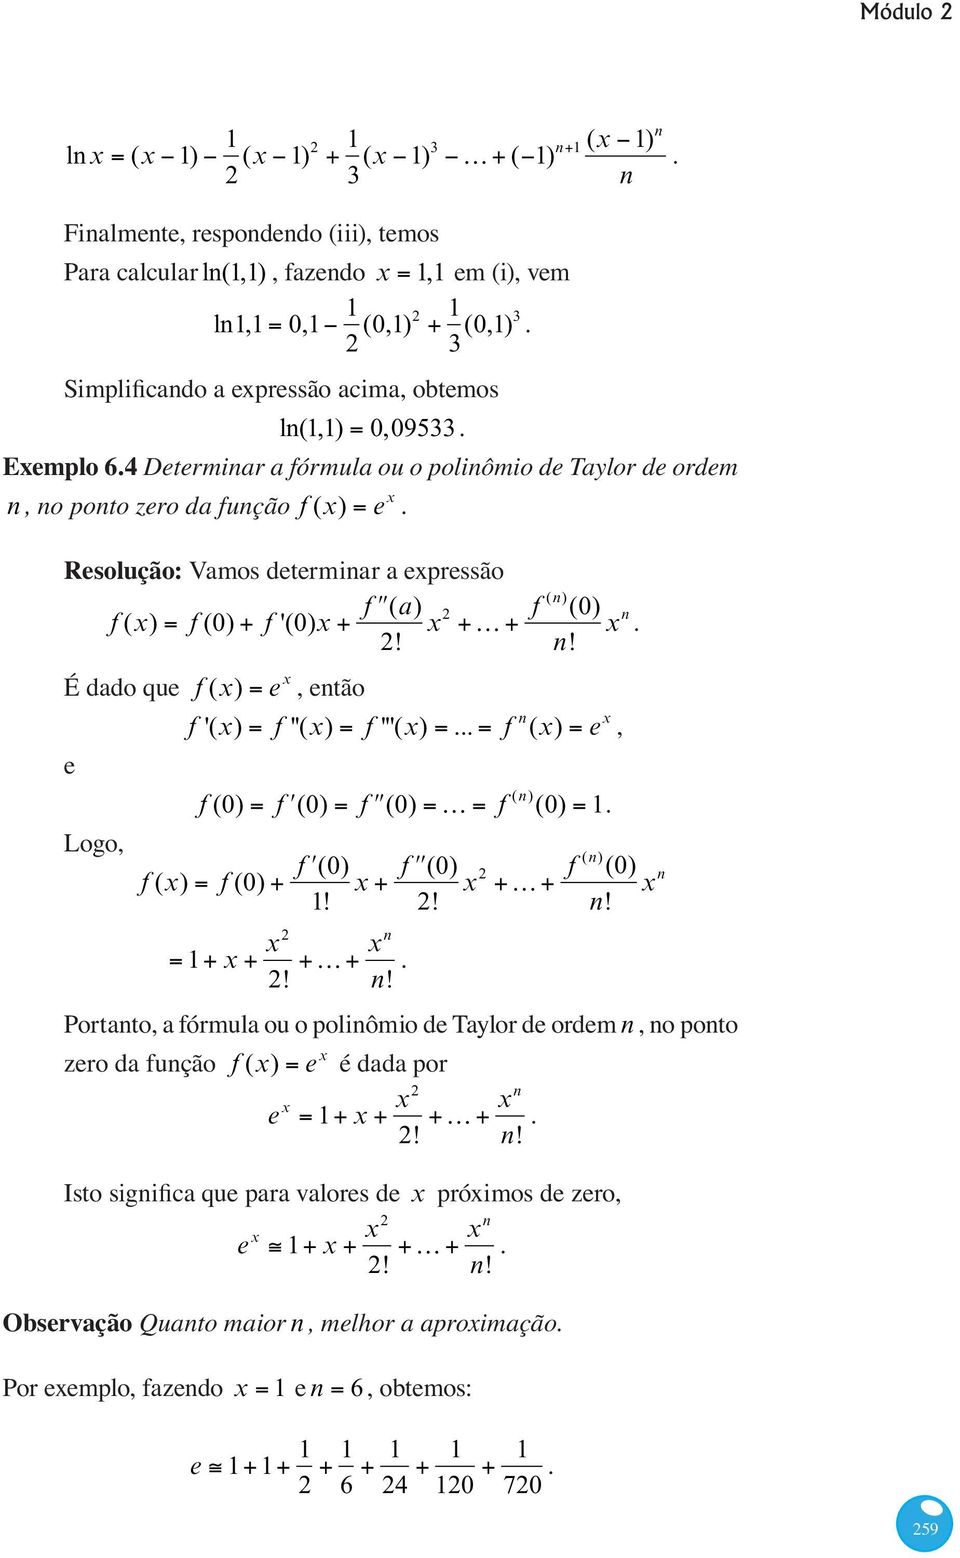 .. f n (x) e x, f (0) f (x) f (0) f (0) f (0) x 1! f (0) K f (n) (0) 1. f (0) 2! x 2 K f (n) (0) x n n! 1 x x2 xn K 2! n!. Portanto, a fórmula ou o polinômio de Taylor de ordem n, no ponto zero da função f (x) e x é dada por e x 1 x x2 xn K 2!